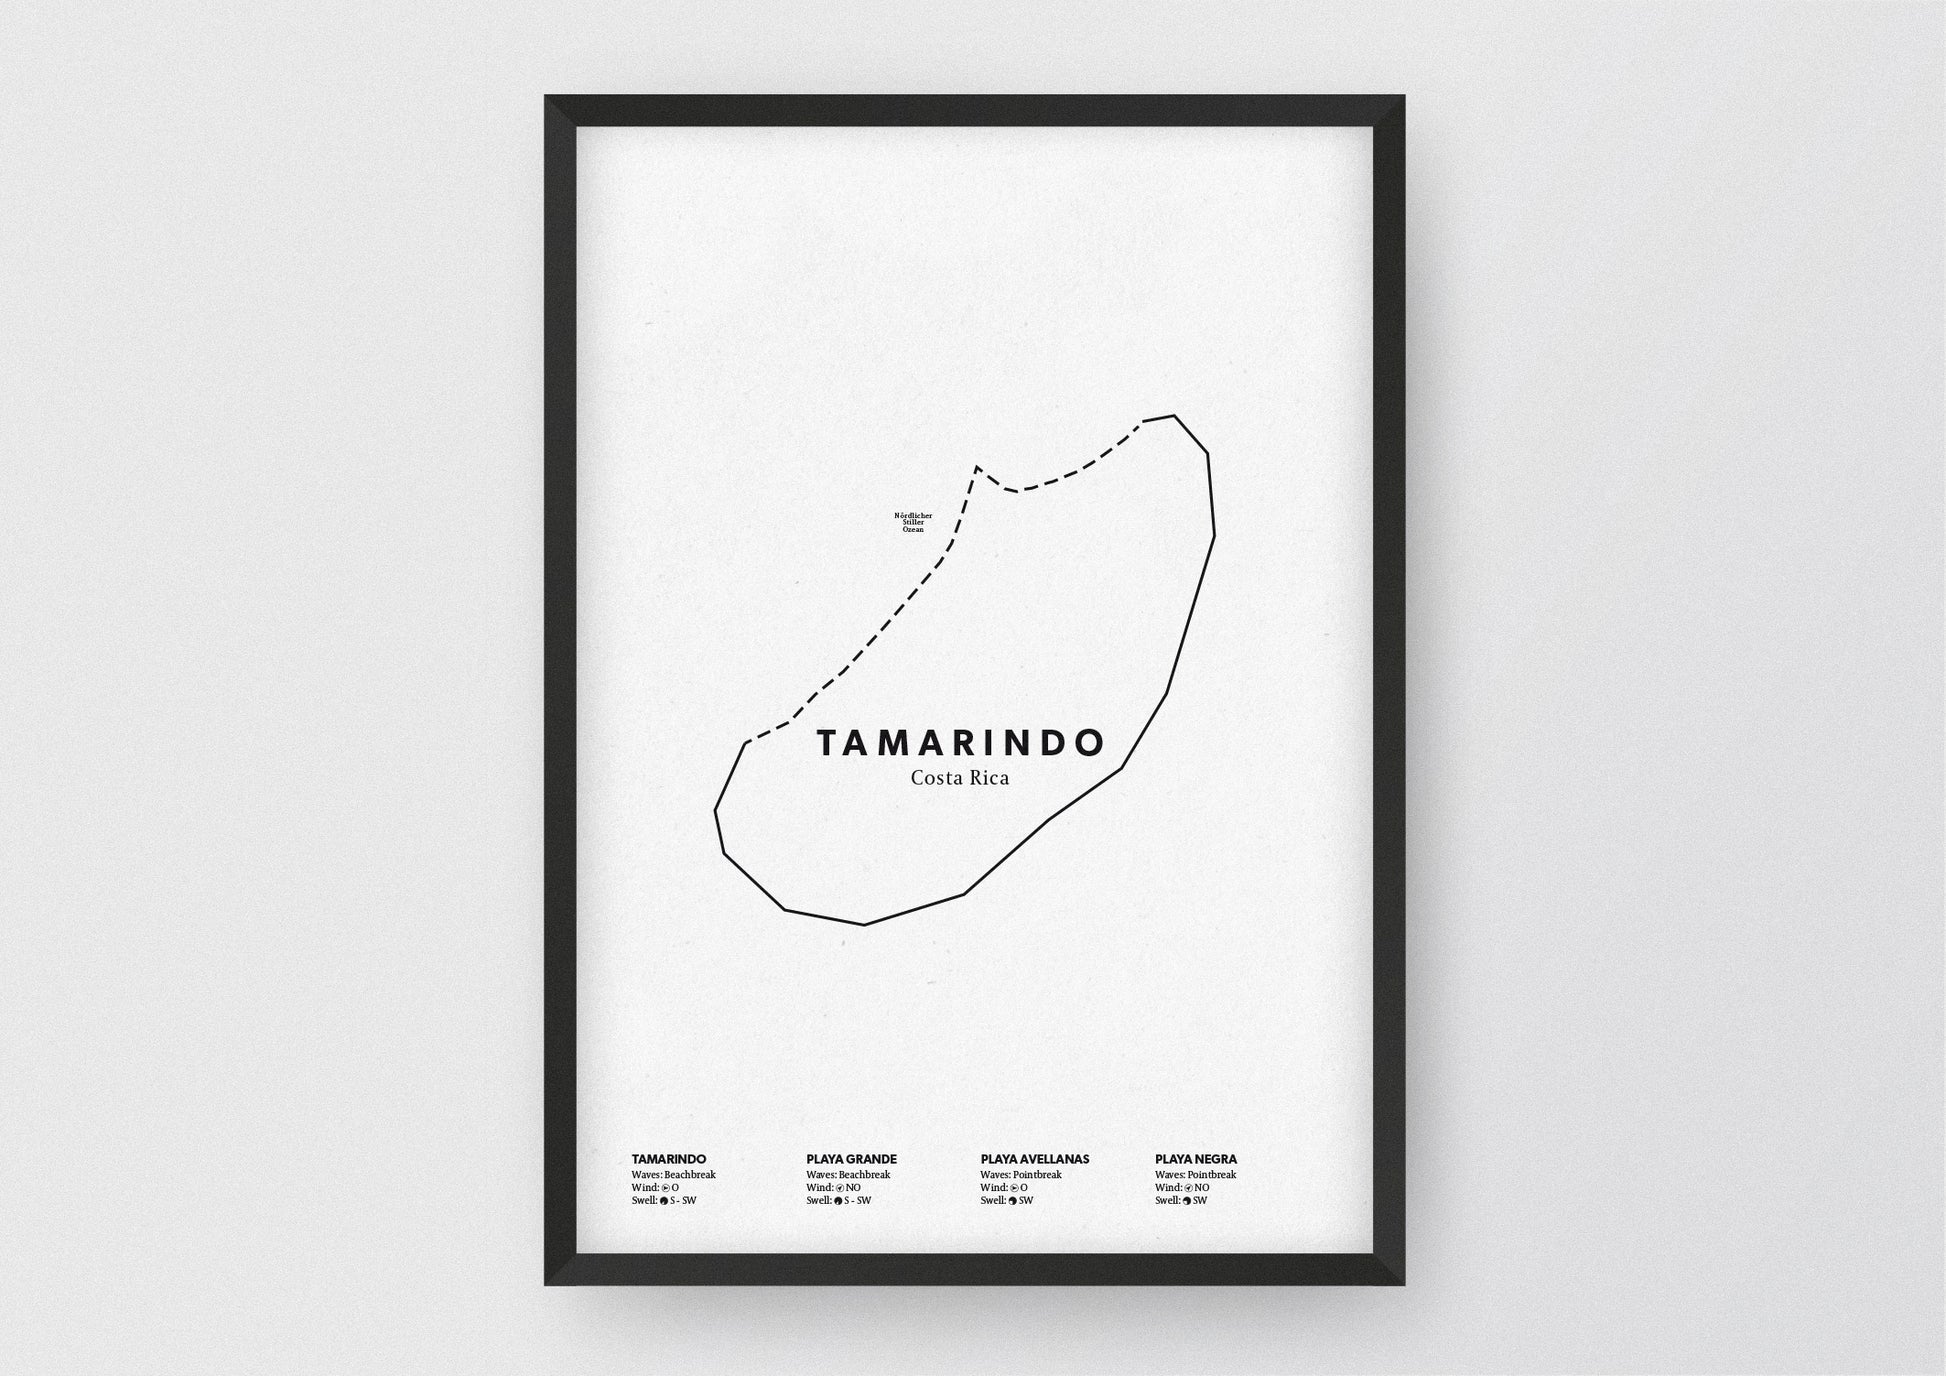 Minimalistische Illustration der Karte von Tamarindo in Costa Rica, mit Markierung der Küste sowie vier Surfhotspots der Region, als stilvoller Einrichtungsgegenstand für Zuhause.